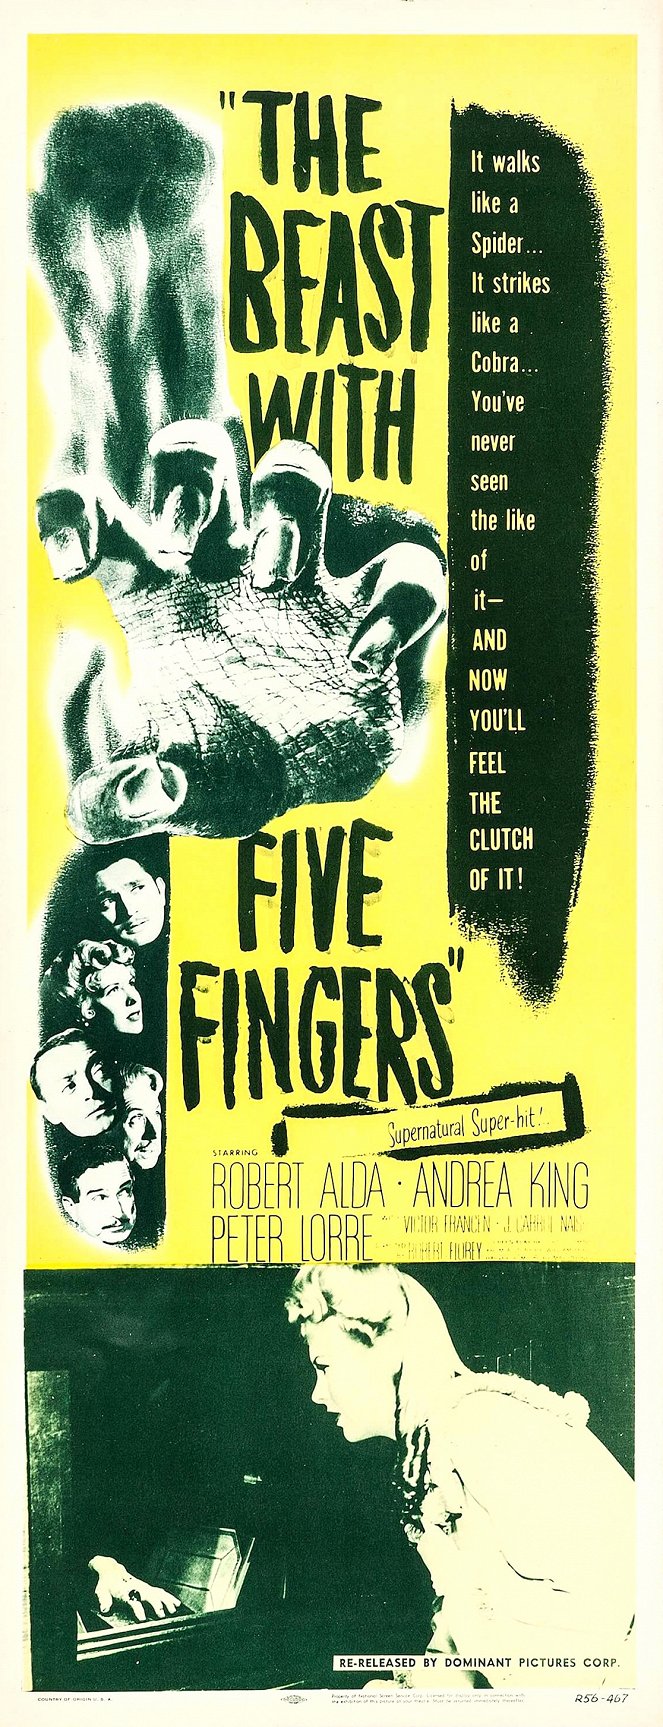 Die Bestie mit fünf Fingern - Plakate